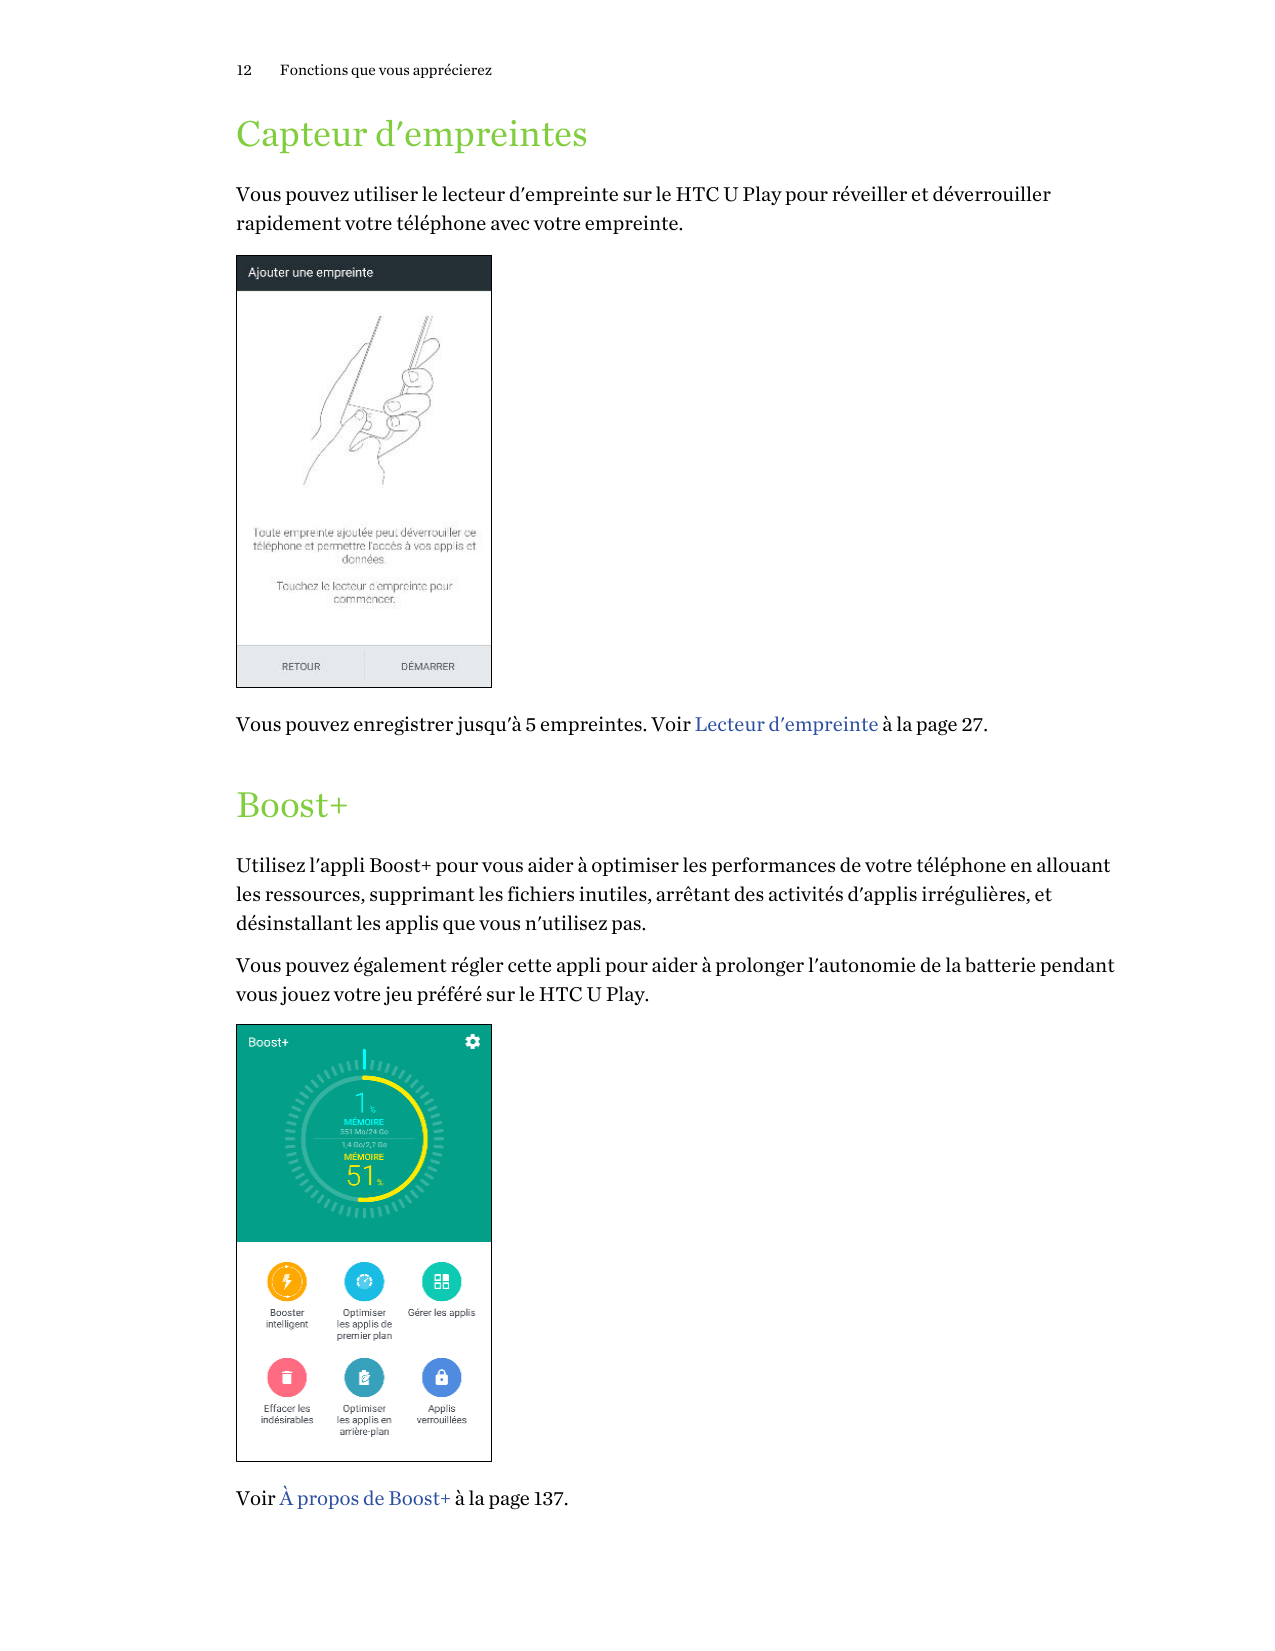 12Fonctions que vous apprécierezCapteur d'empreintesVous pouvez utiliser le lecteur d'empreinte sur le HTC U Play pour réveiller